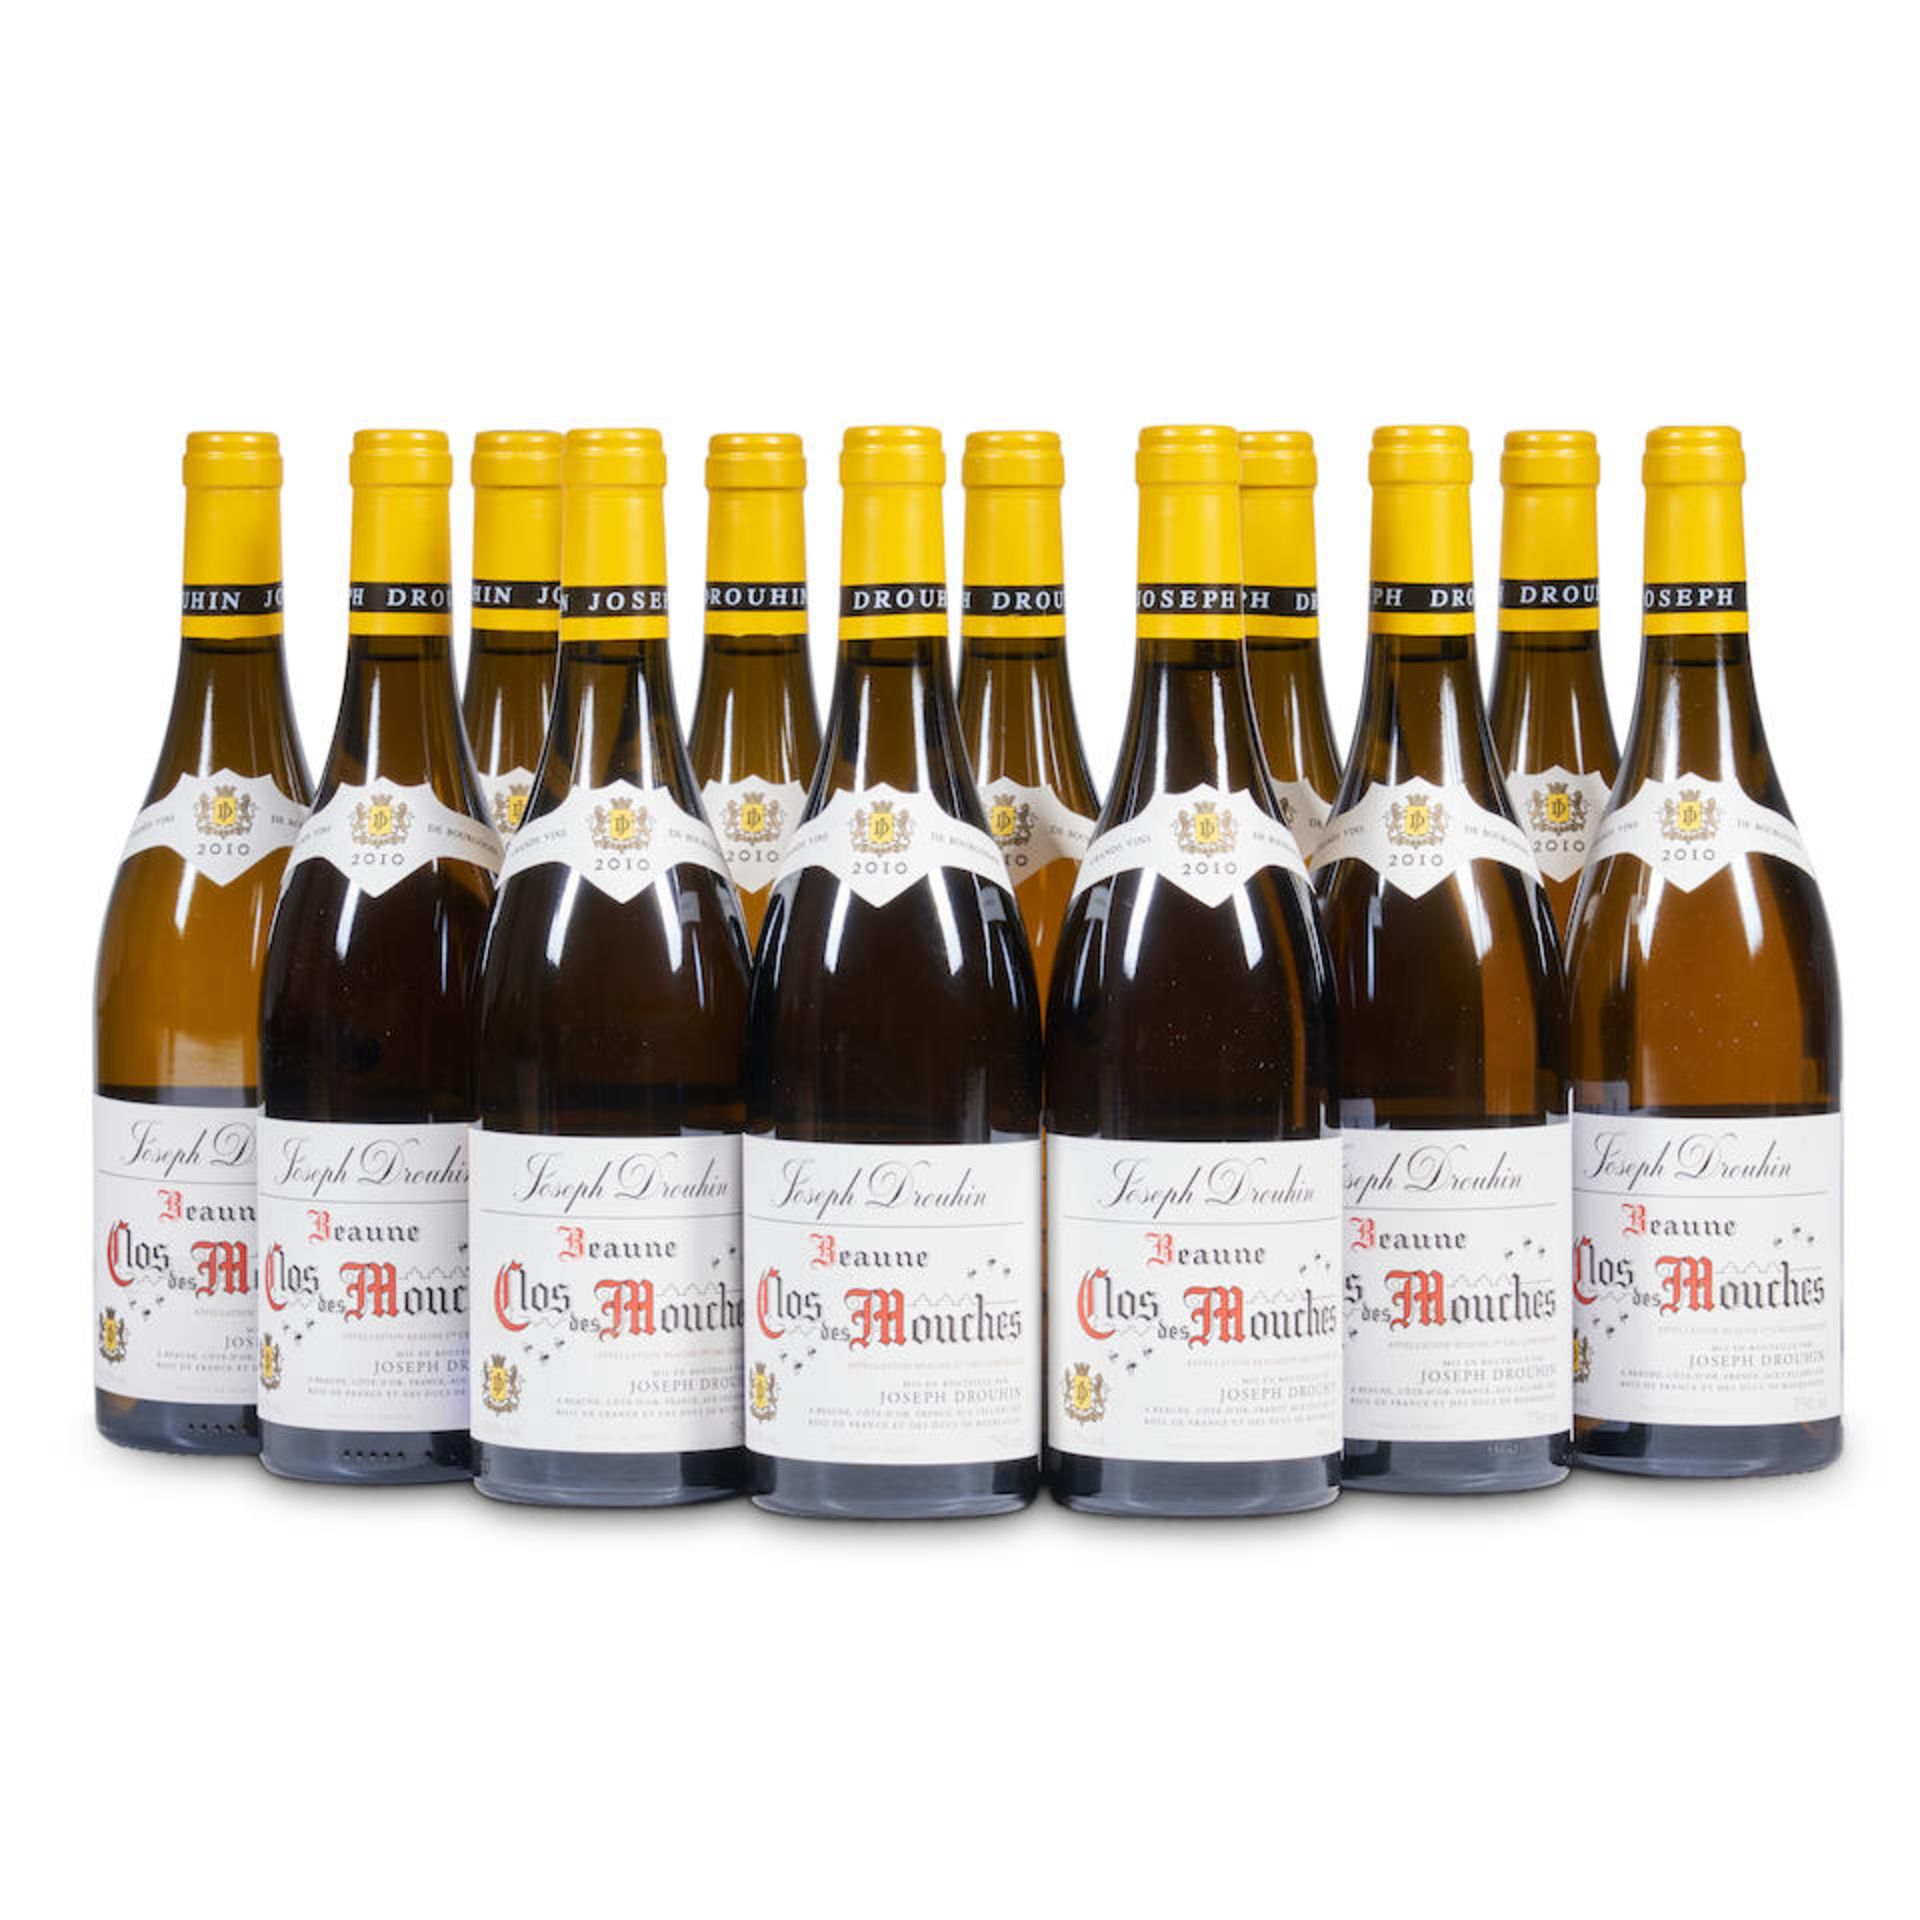 Drouhin Beaune Les Clos des Mouches Blanc 2010 (12 bottles)